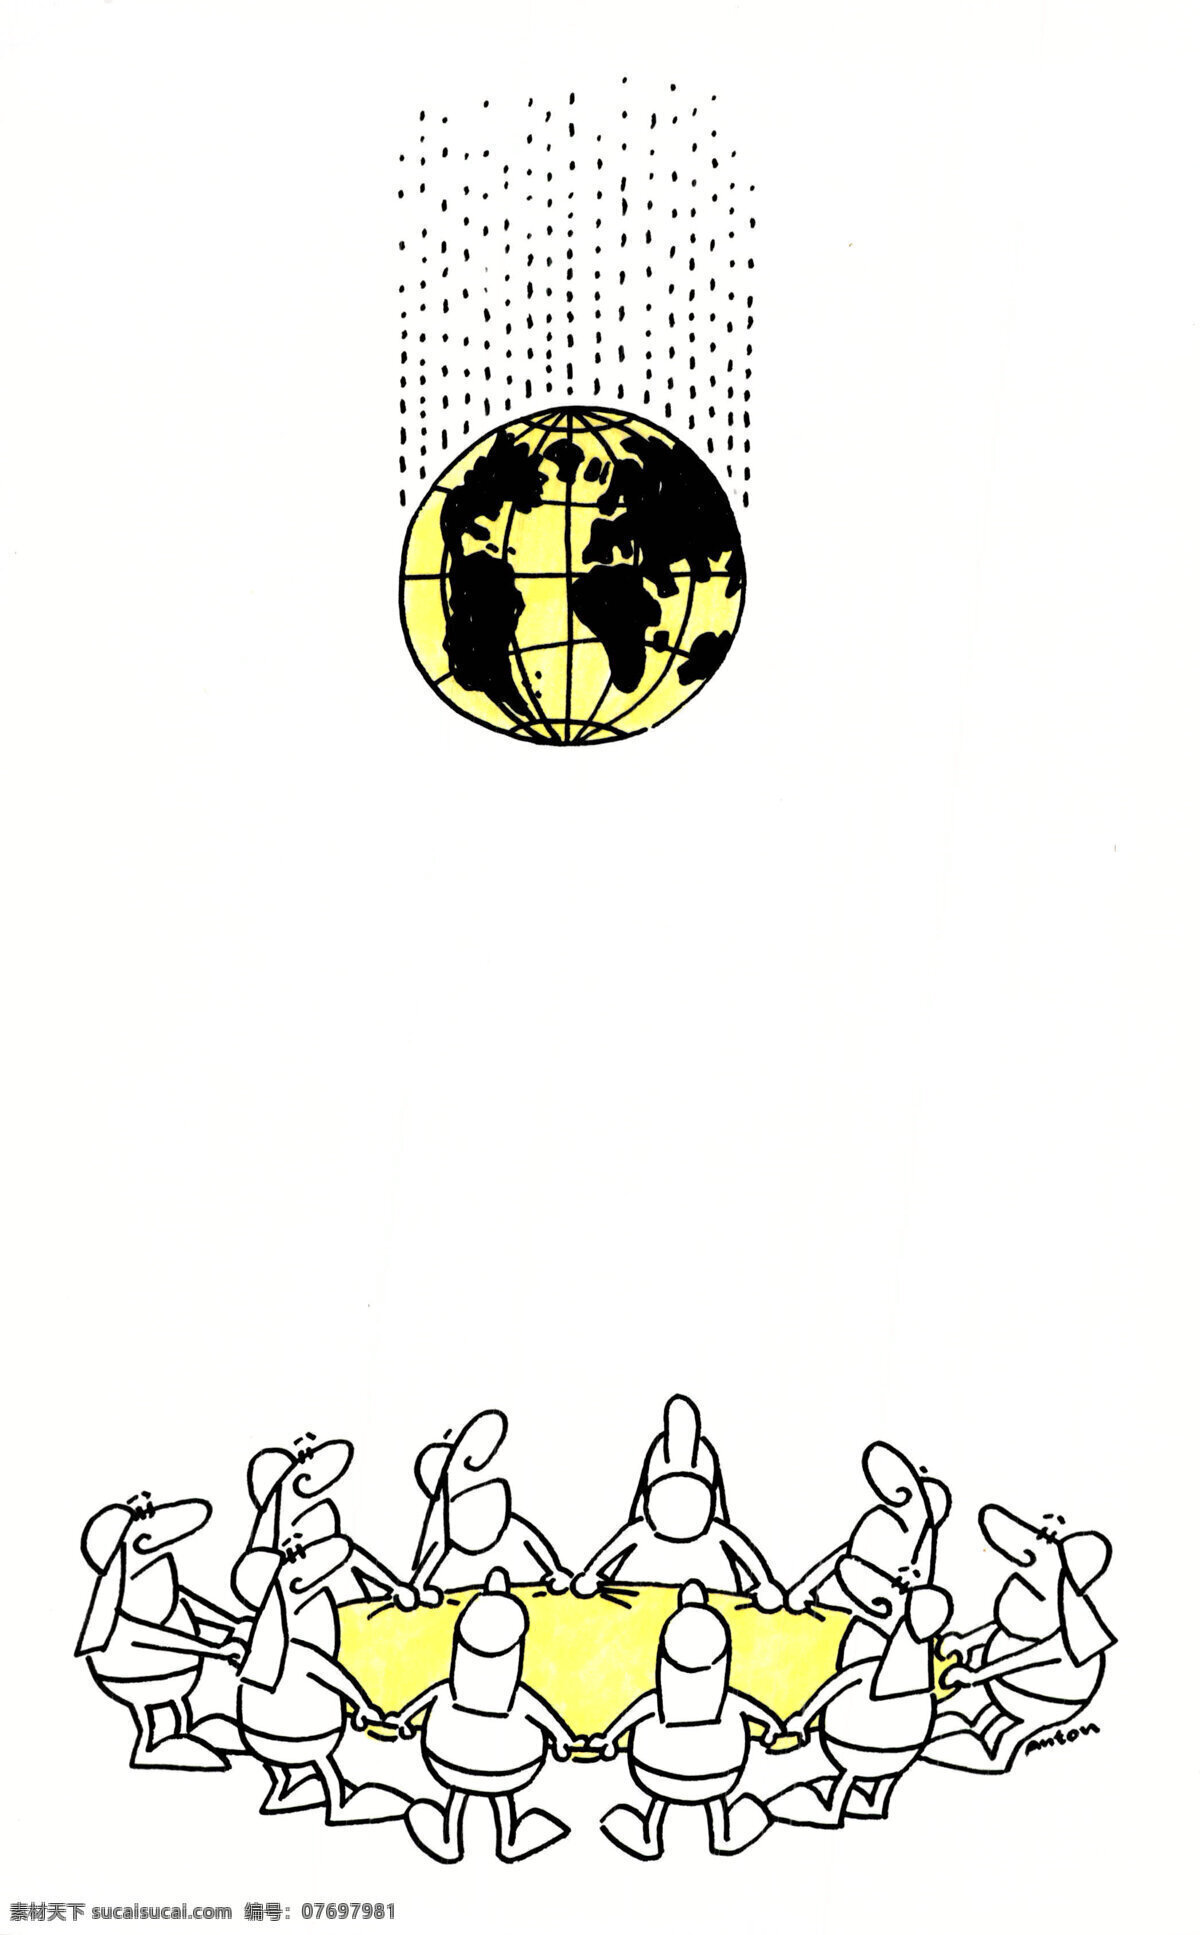 营救地球 漫画 外国漫画 外国优秀漫画 幽默漫画 环保漫画 斯洛伐克 anton kotreba 消防员 地球 动漫动画